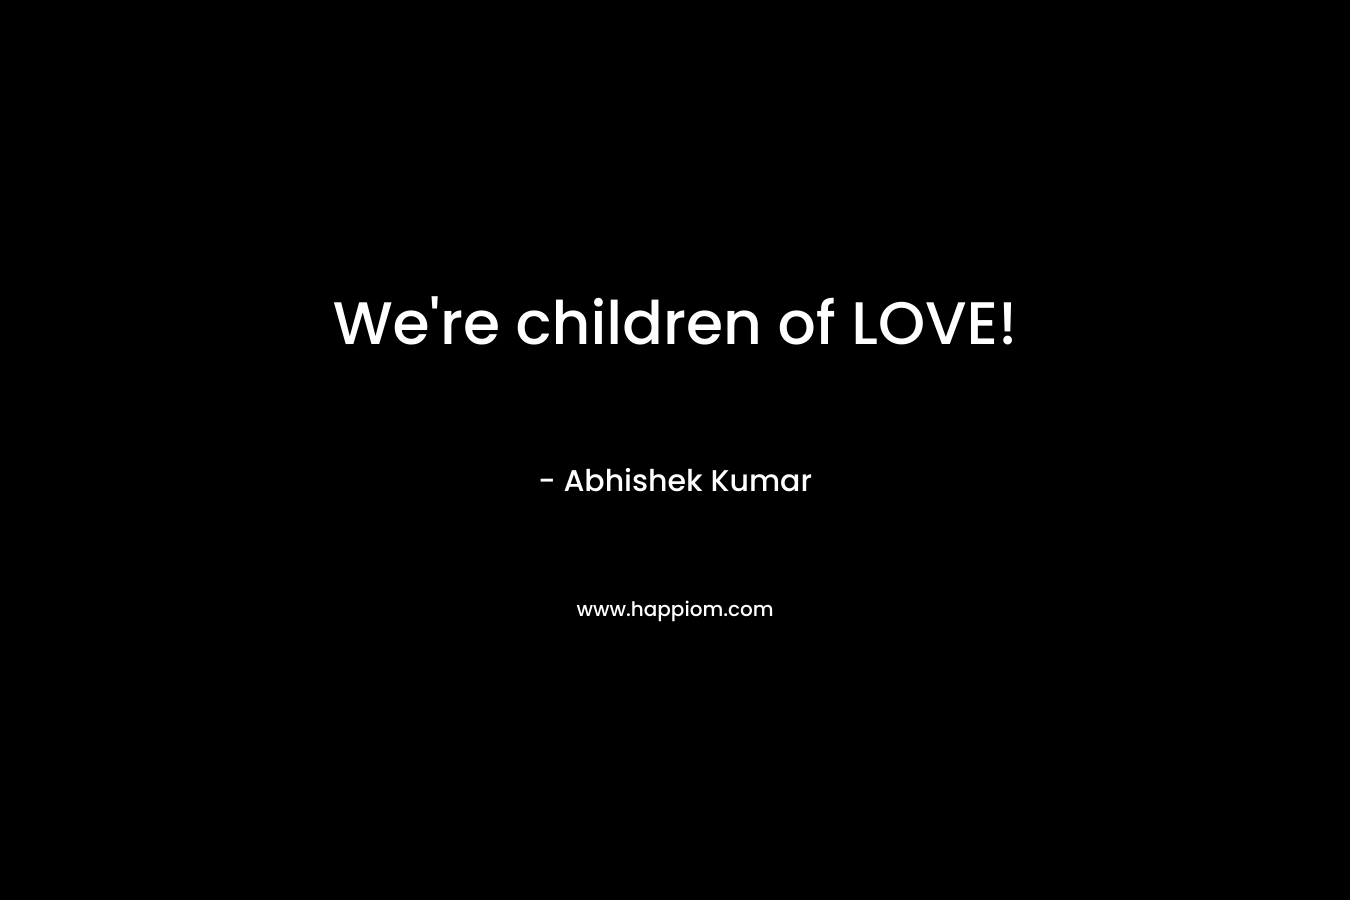 We're children of LOVE!